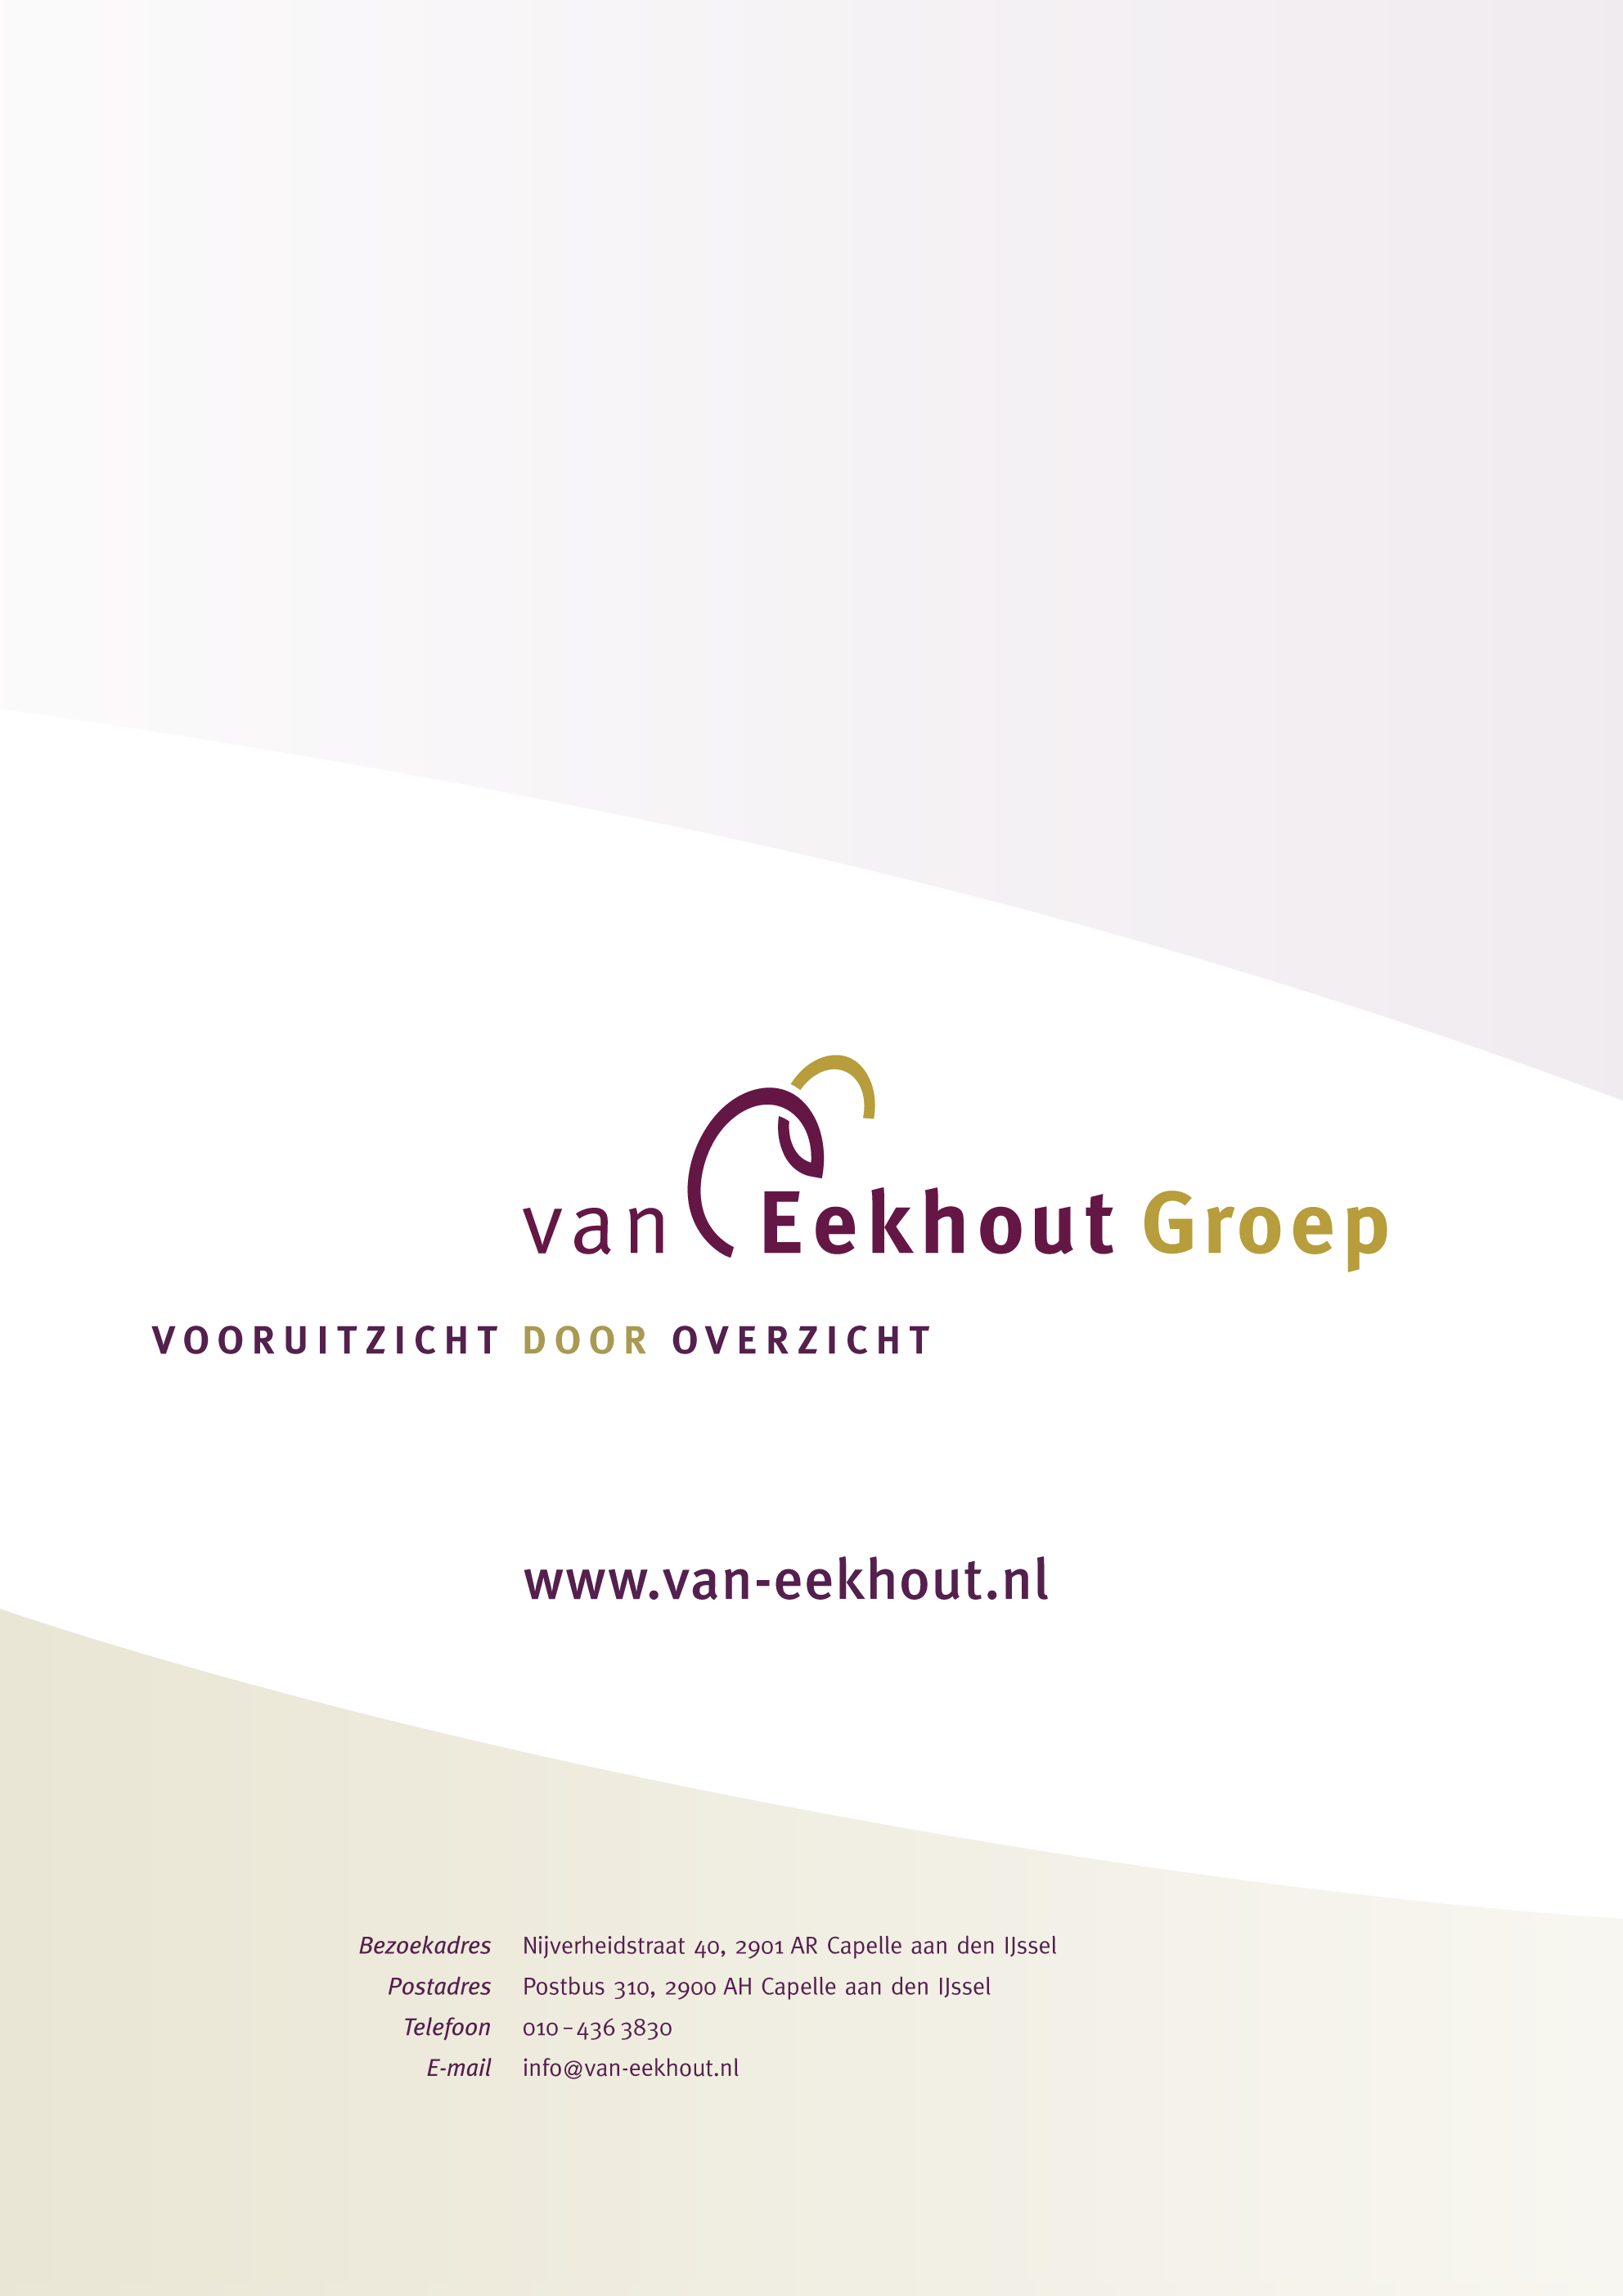 De Van Eekhout Groep staat klaar om u een goed overzicht te verstrekken van uw financiën in al haar facetten. U krijgt daarmee vooruitzicht op een ontspannen manier van zakendoen.